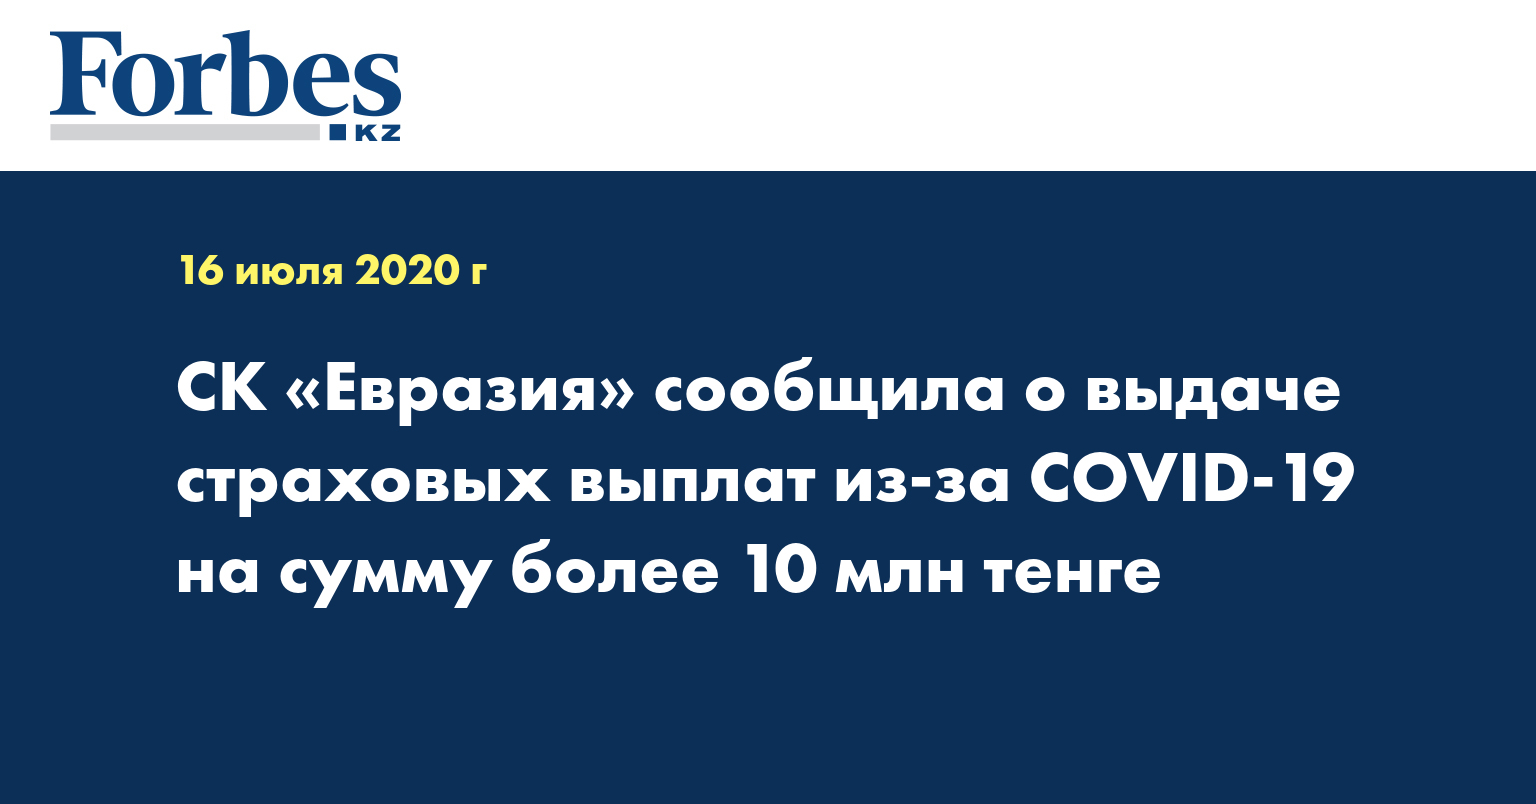 СК «Евразия» сообщила о выдаче страховых выплат из-за COVID-19 на сумму более 10 млн тенге